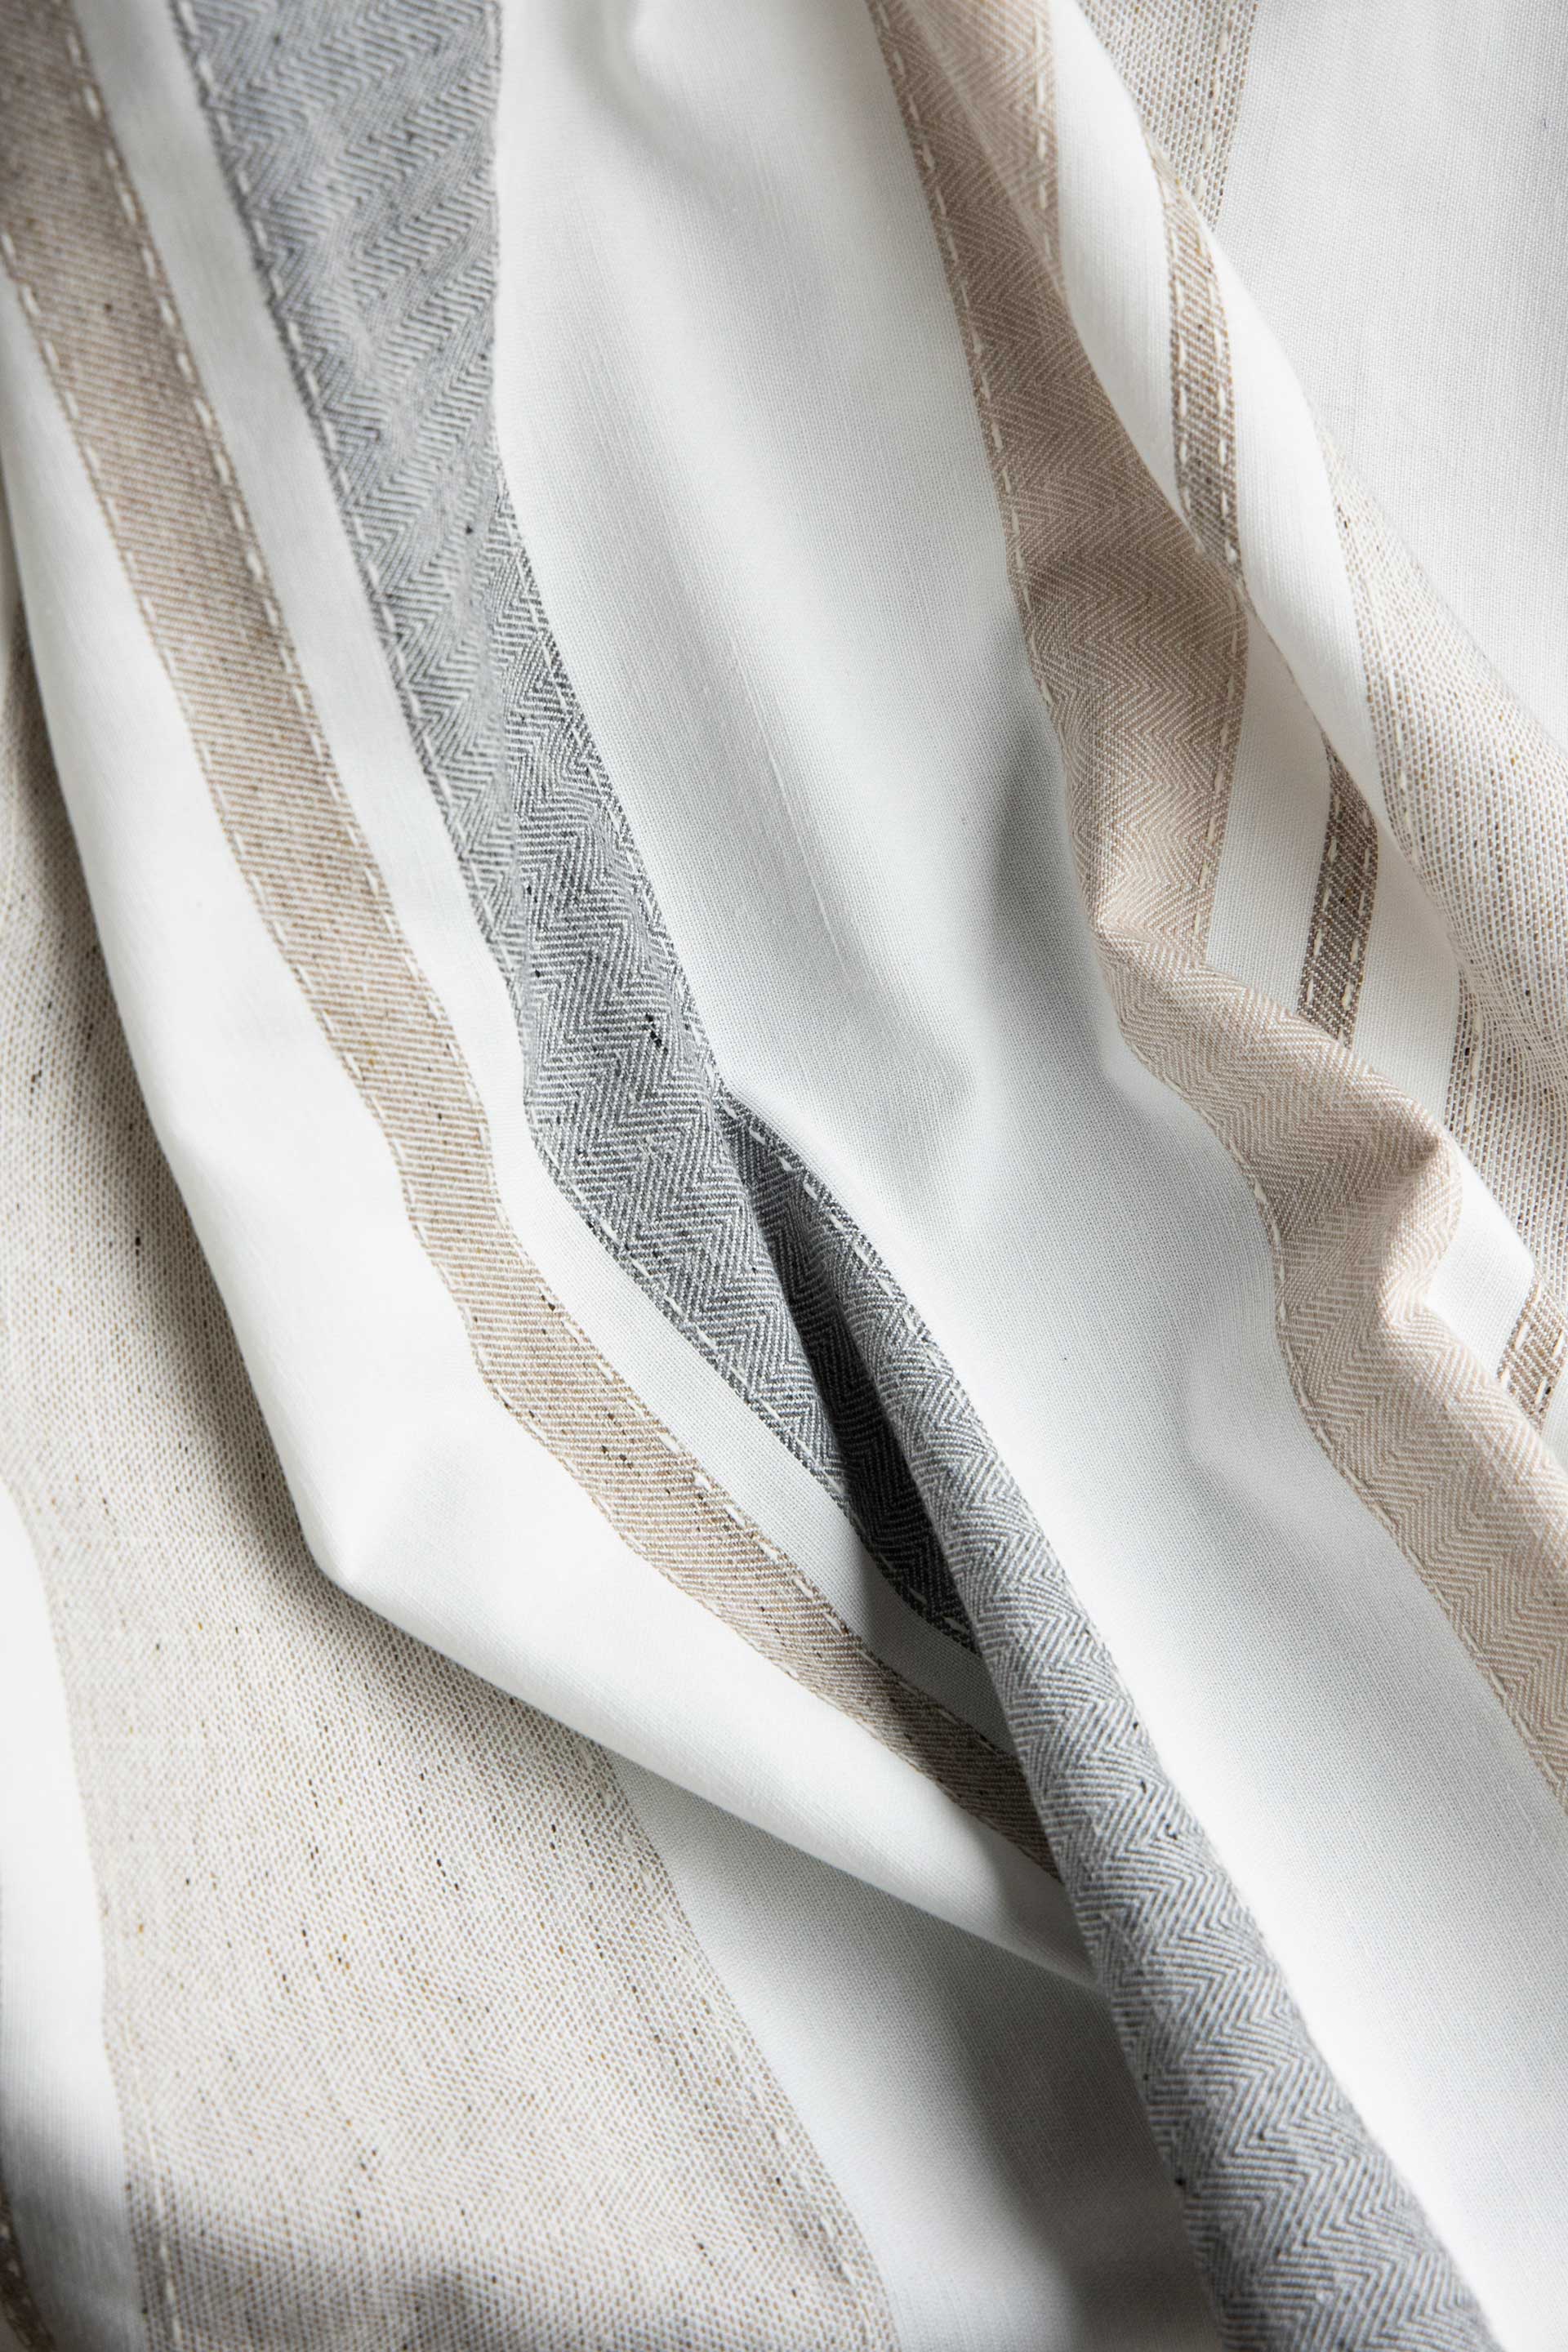 余った布から糸を作り、再利用した「BAUMKUCHEN」￥11,880 （税込）。しっとりと柔らかい質感に、ボーダー部分のヘリンボーン、刺繍のようなステッチがアクセント。